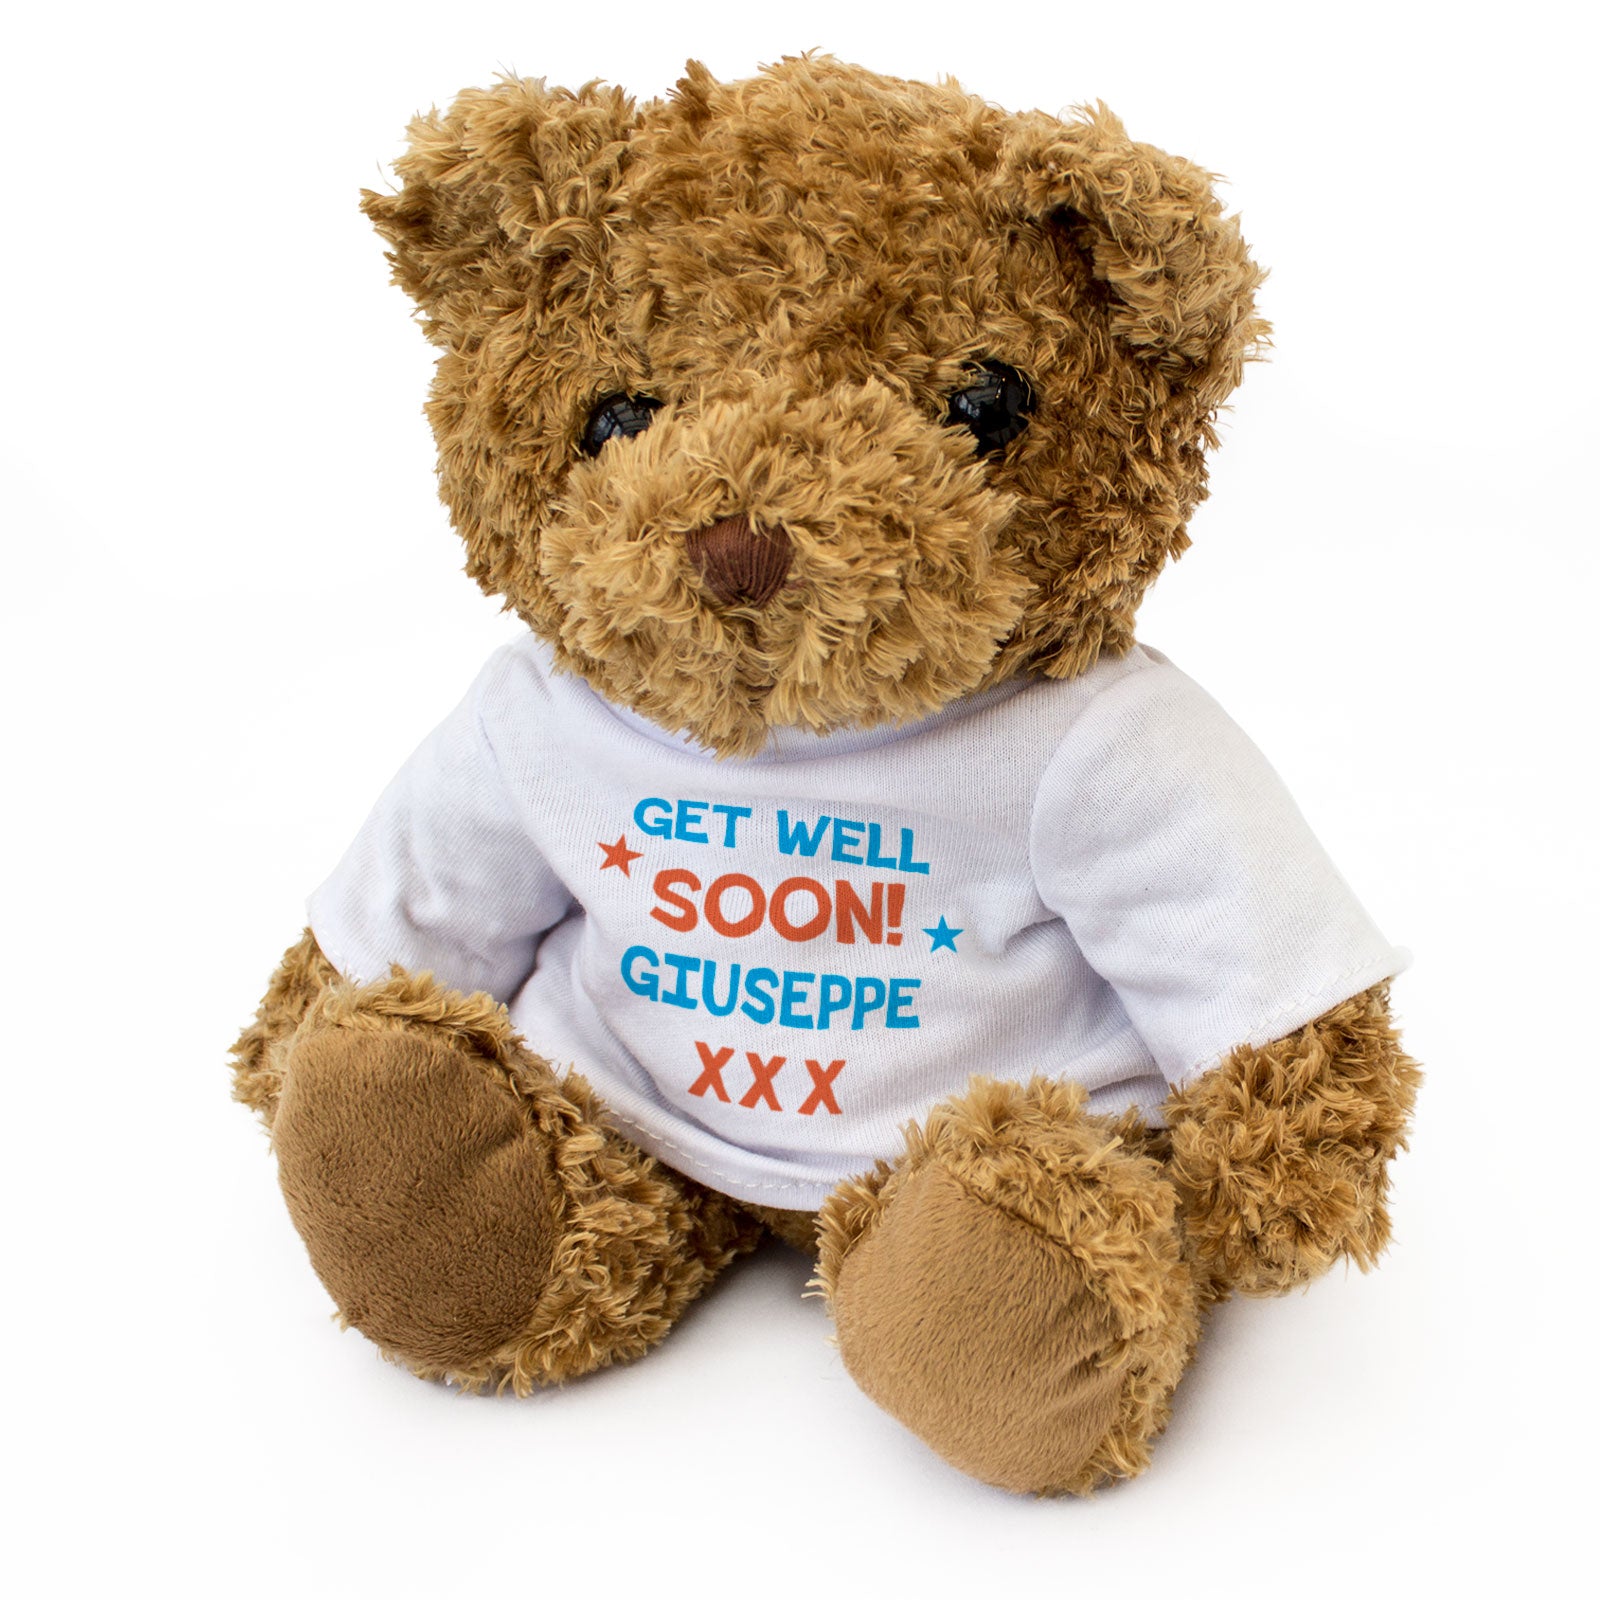 Get Well Soon Giuseppe - Teddy Bear